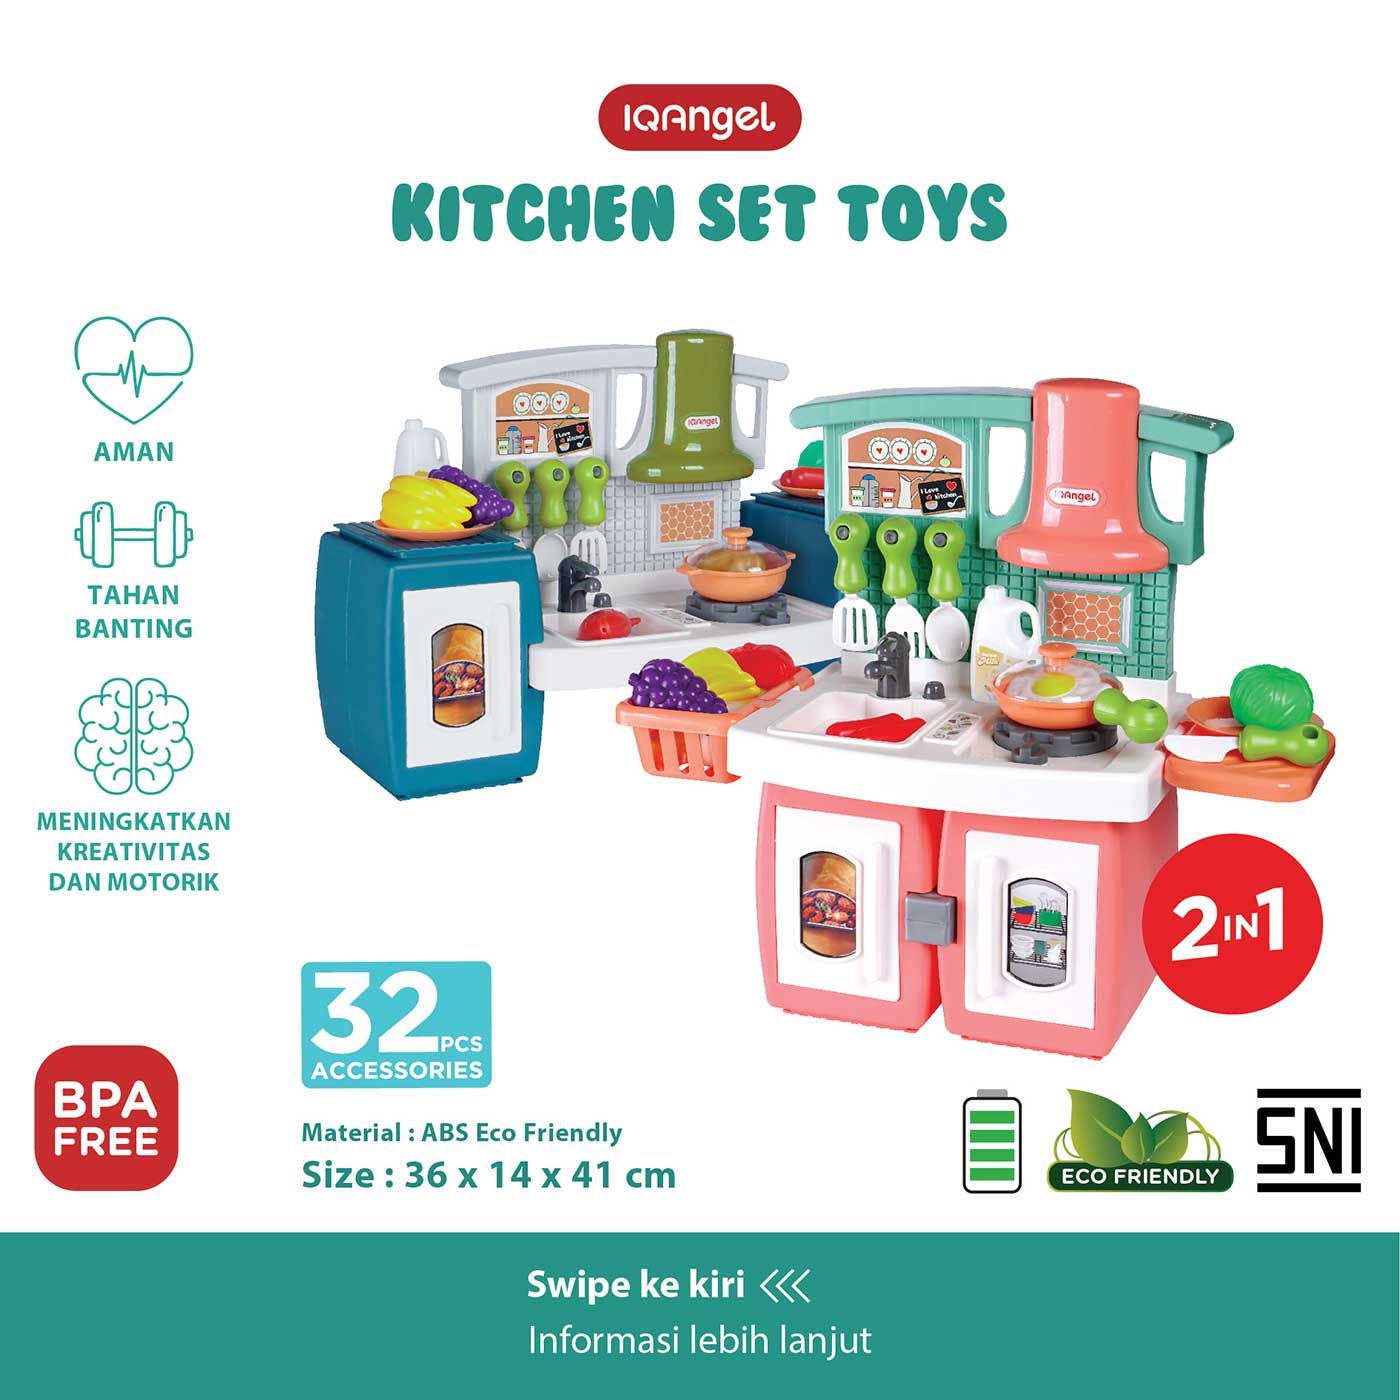 IQ Angel Kitchen Set Toys - 1